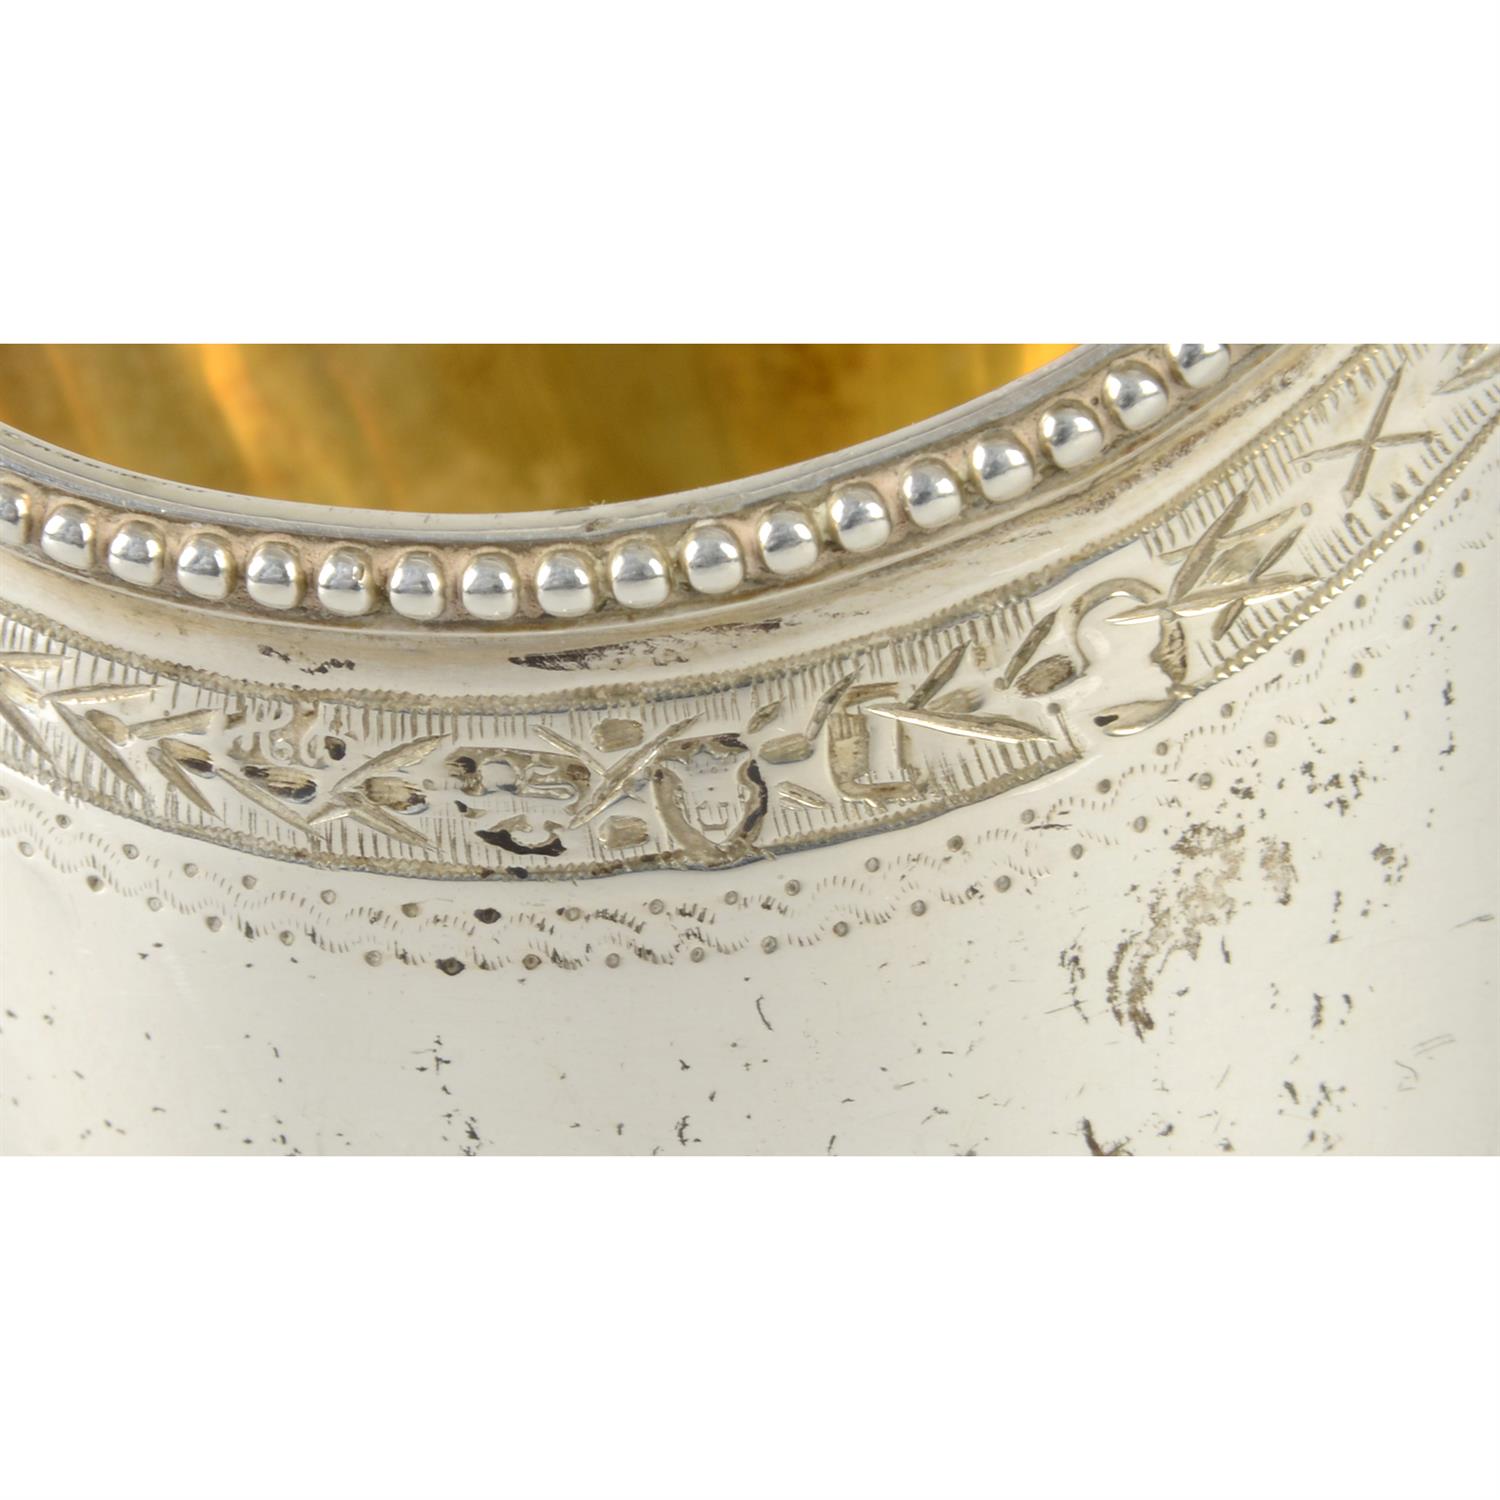 George III silver pedestal cream jug by Hester Bateman. - Image 3 of 3